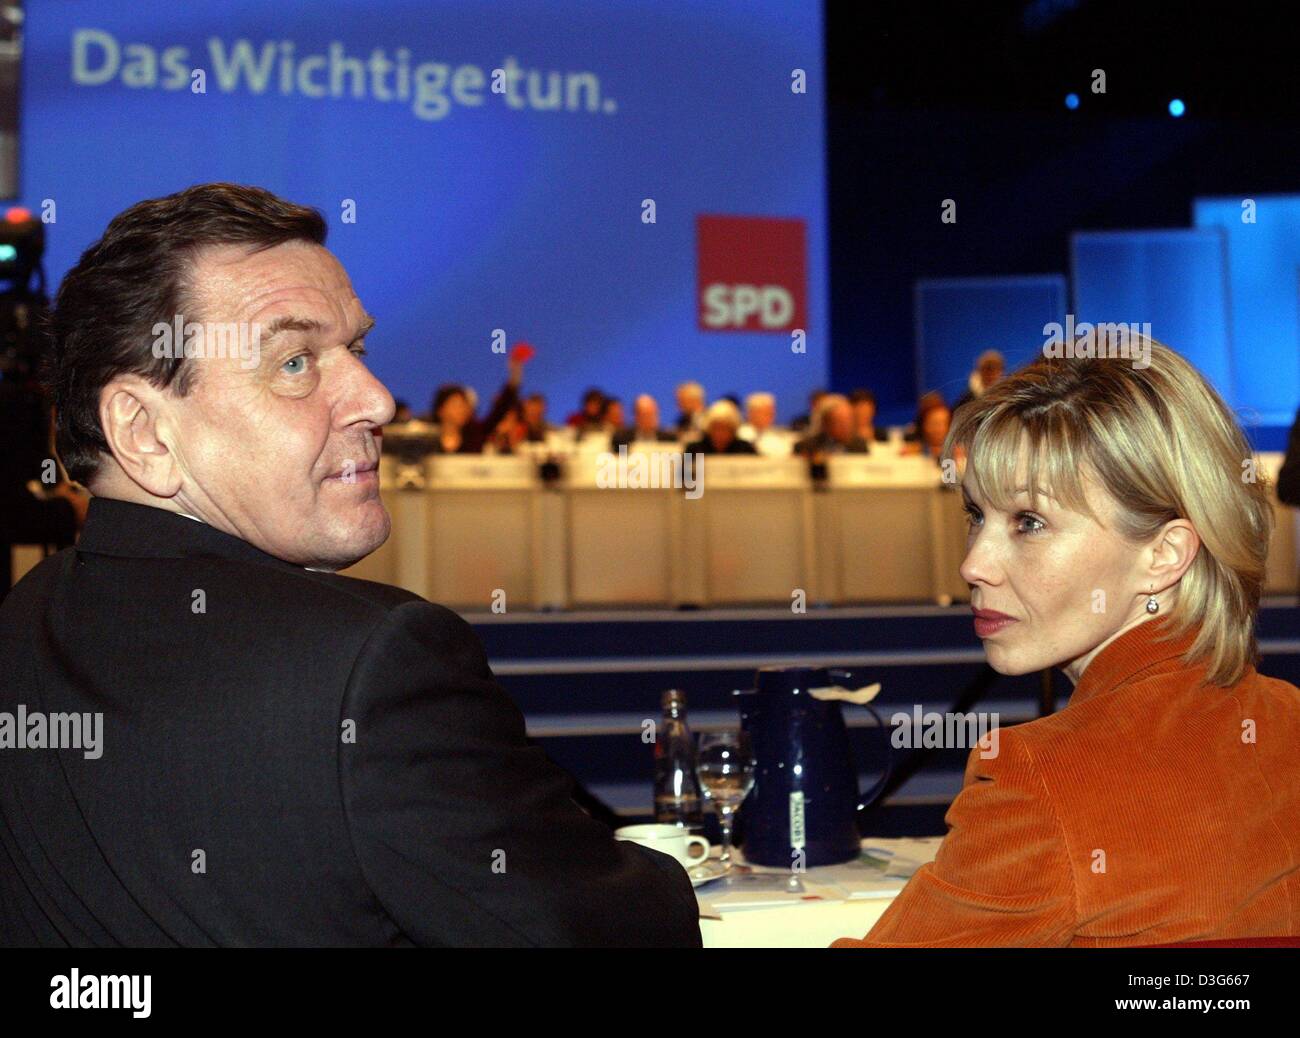 (Dpa) - German Chancellor Gehard Schroeder (R) sitzt neben seiner Frau Doris Schröder-Koepf während dem SPD-Parteitag in Bochum, Deutschland, 17. November 2003. 59-j hrige Schroeder wurde Parteichef mit 80,83 Prozent der Stimmen, gestimmt, 7,75 Punkte weniger im Vergleich zu den letzten Partei Wahlen vor zwei Jahren ist. Schröder sprach über ein ehrliches Ergebnis, die die Dignit Ehren würde Stockfoto